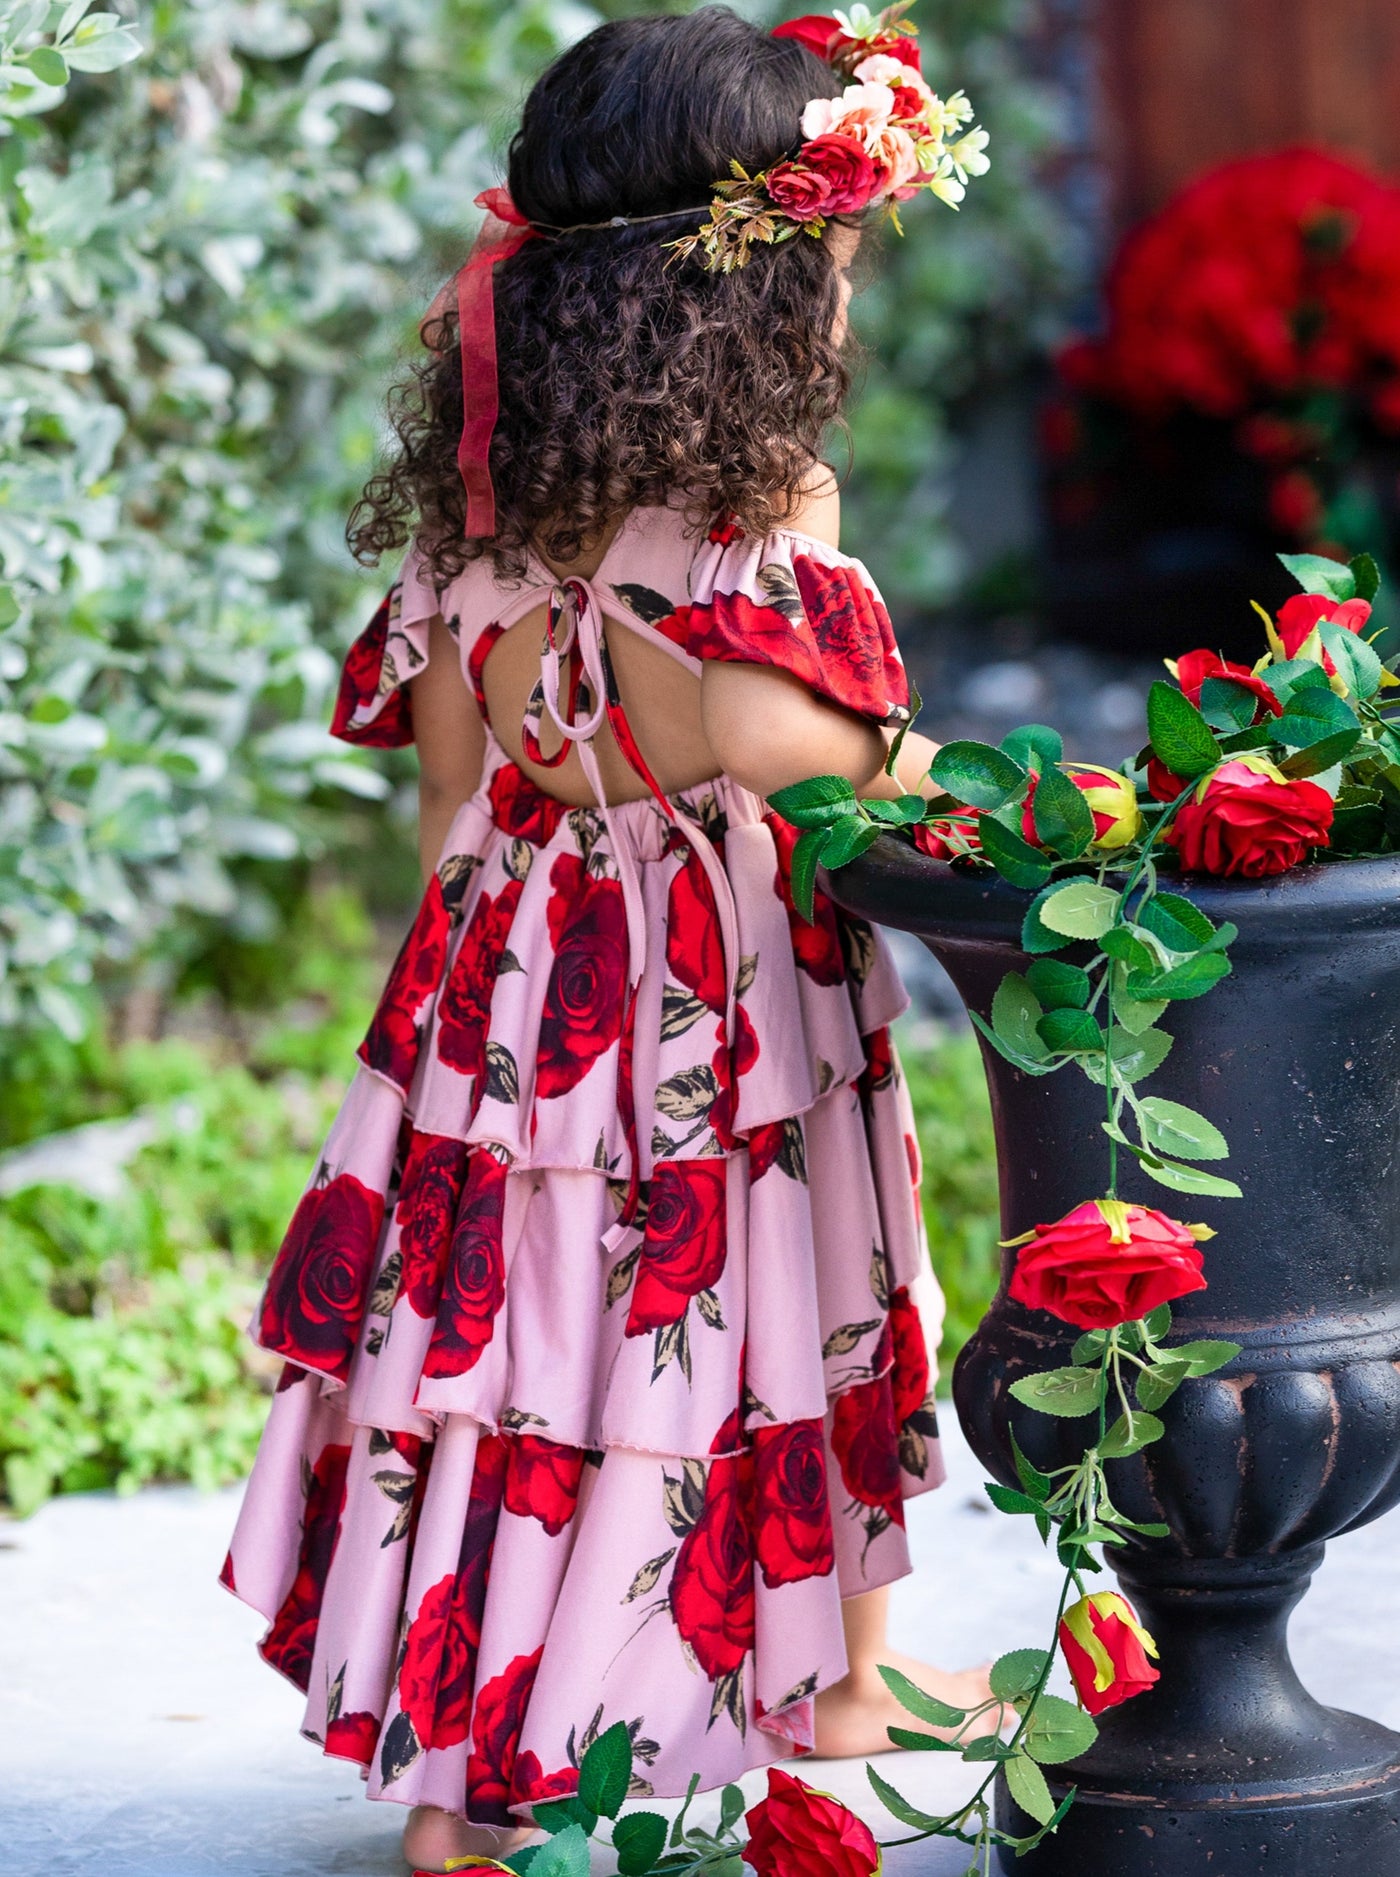 Toddler Spring Dresses | Girls Floral Open Back Tiered Hi Lo Dress